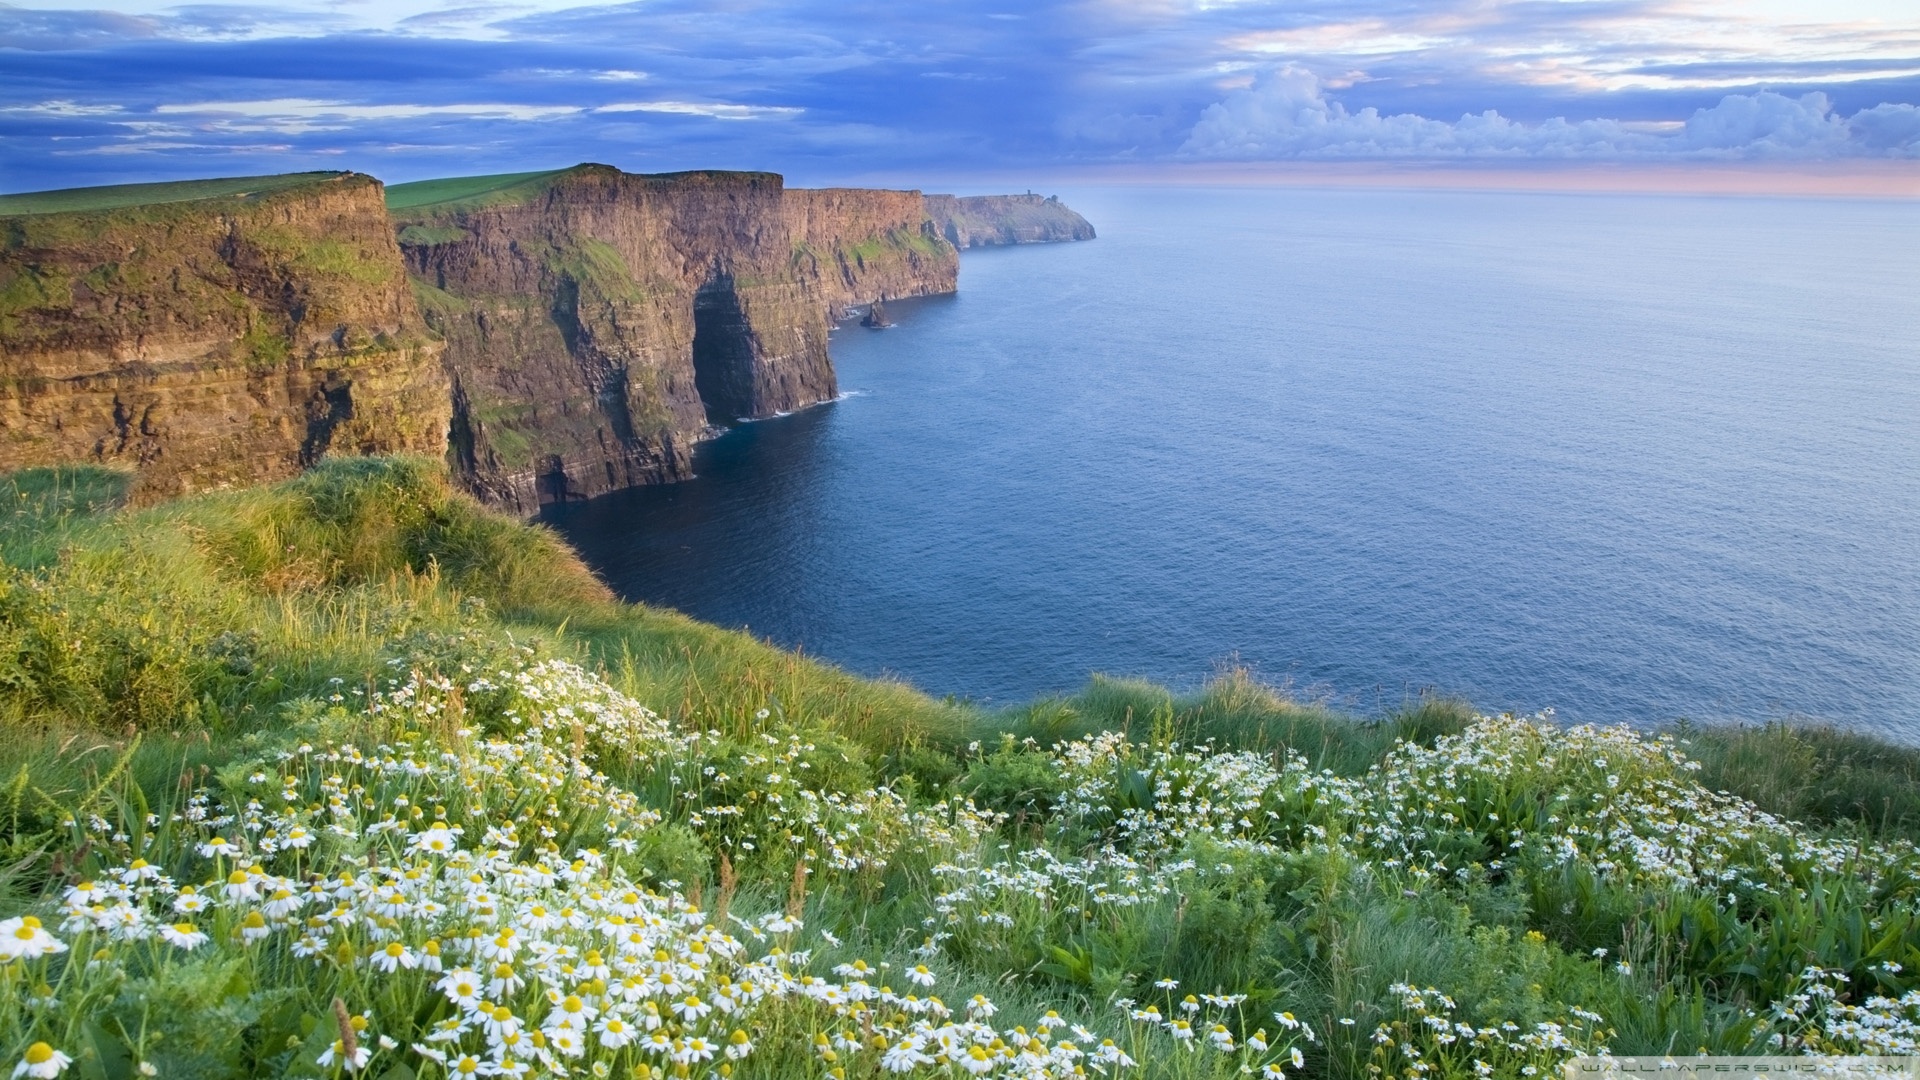 Hình nền máy tính Ireland, Irish Desktop Backgrounds: Về đẹp mọi mặt, đây là những bức ảnh cực kỳ xứng đáng để trang trí cho màn hình máy tính của bạn. Với các hình nền về Ireland, từ những thung lũng xanh thẳm cho tới những ngọn núi cao quanh năm tuyết phủ, bạn sẽ có được một không gian làm việc đầy sức sống và cảm hứng.